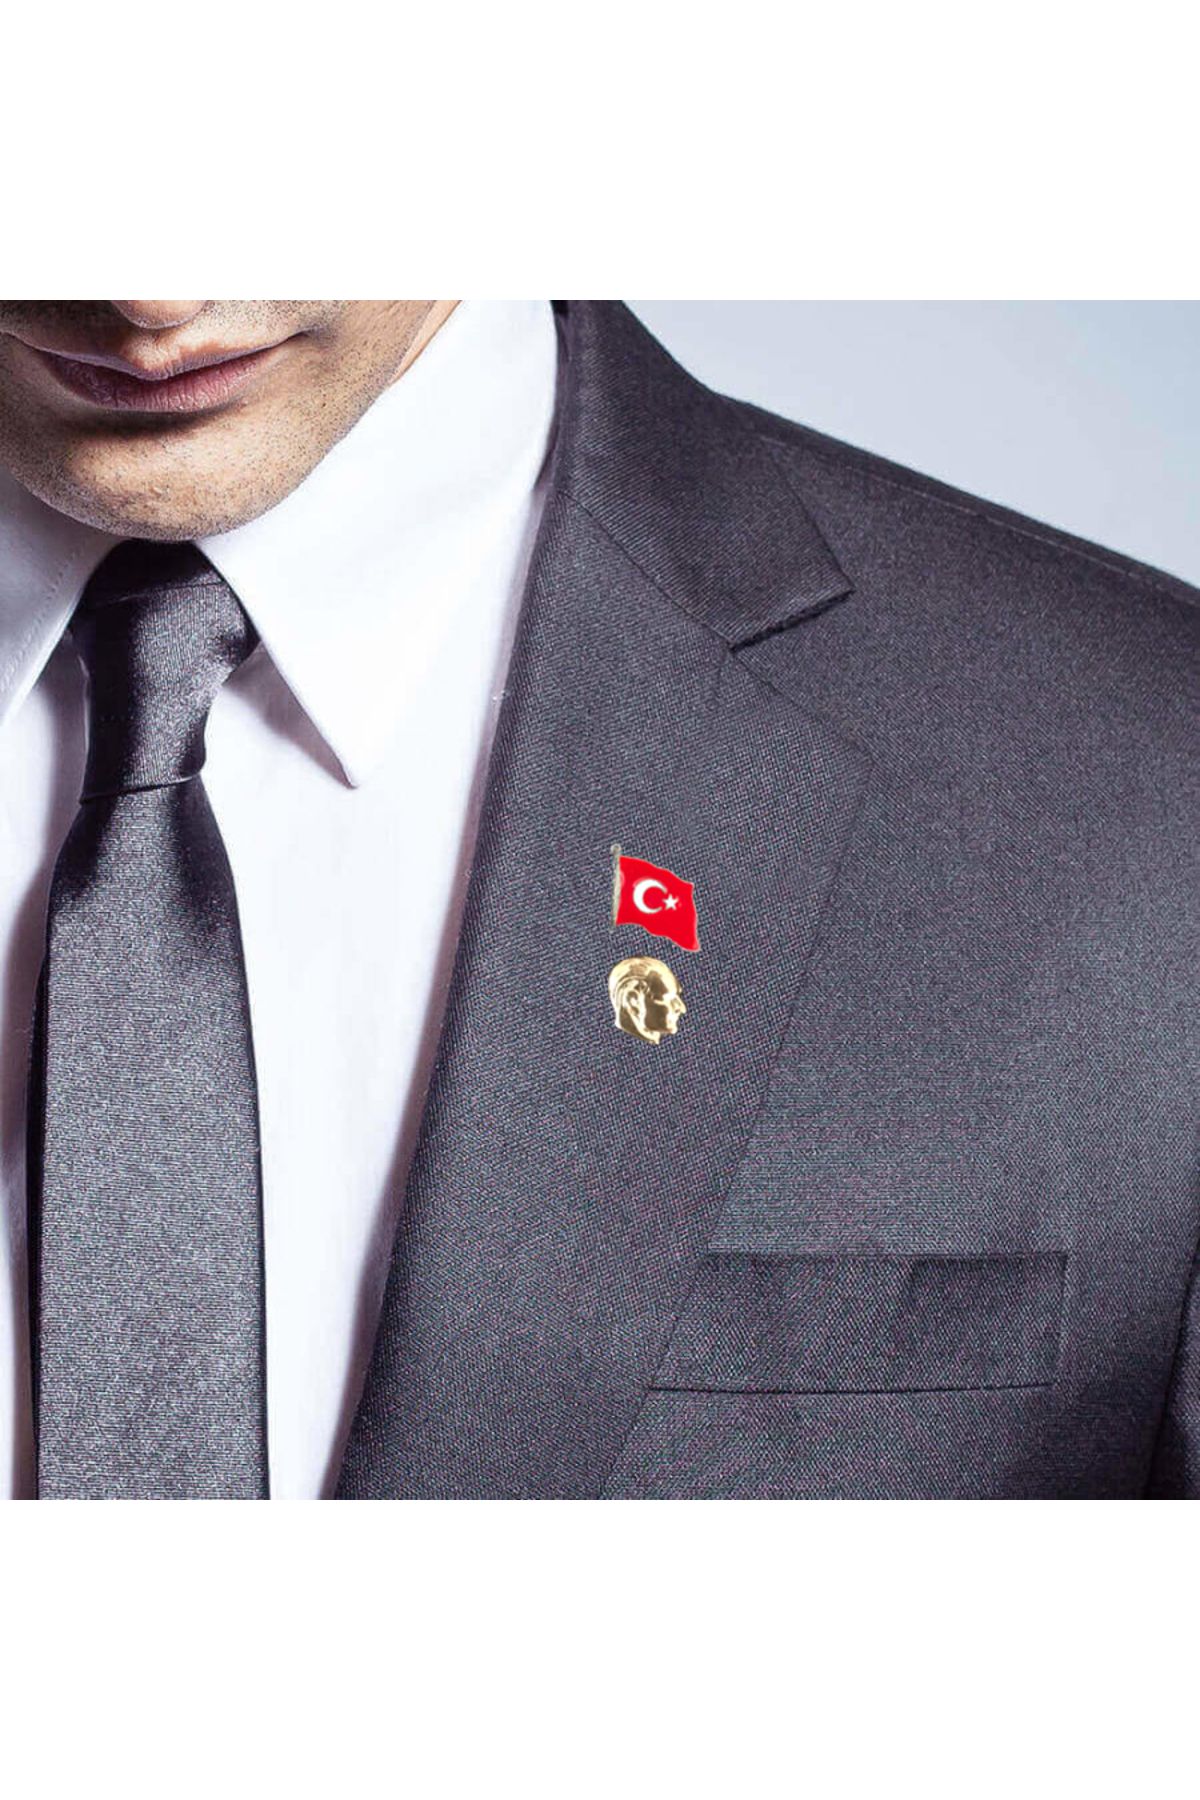 Zarif Atatürk Büstü - Bayrak Yaka Rozeti Hd975